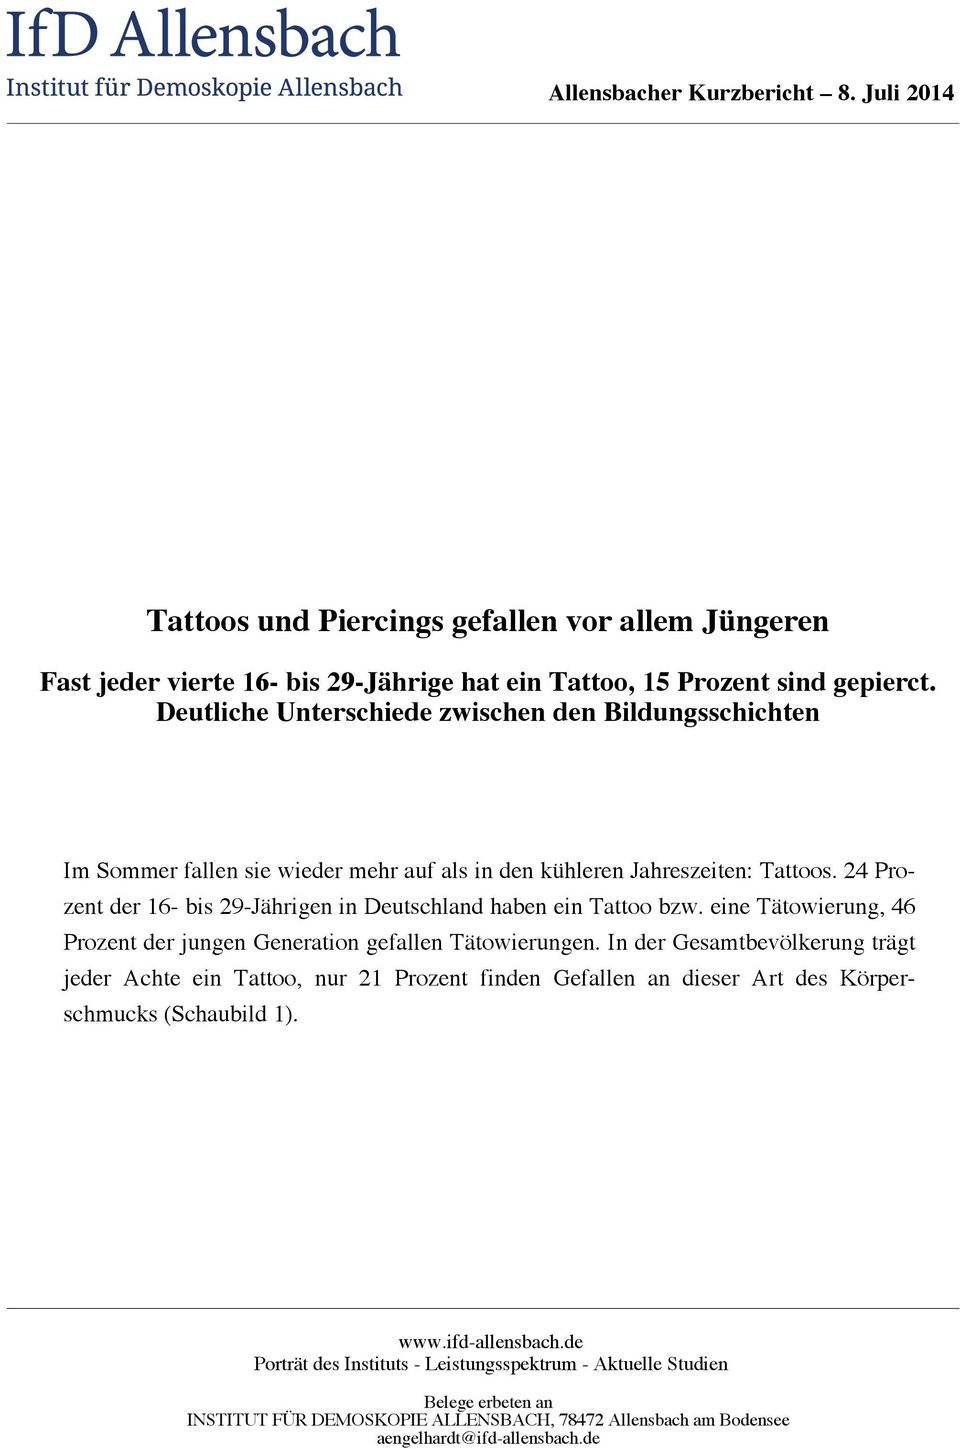 24 Prozent der 16- bis 29-Jährigen in Deutschland haben ein Tattoo bzw. eine Tätowierung, 46 Prozent der jungen Generation gefallen Tätowierungen.